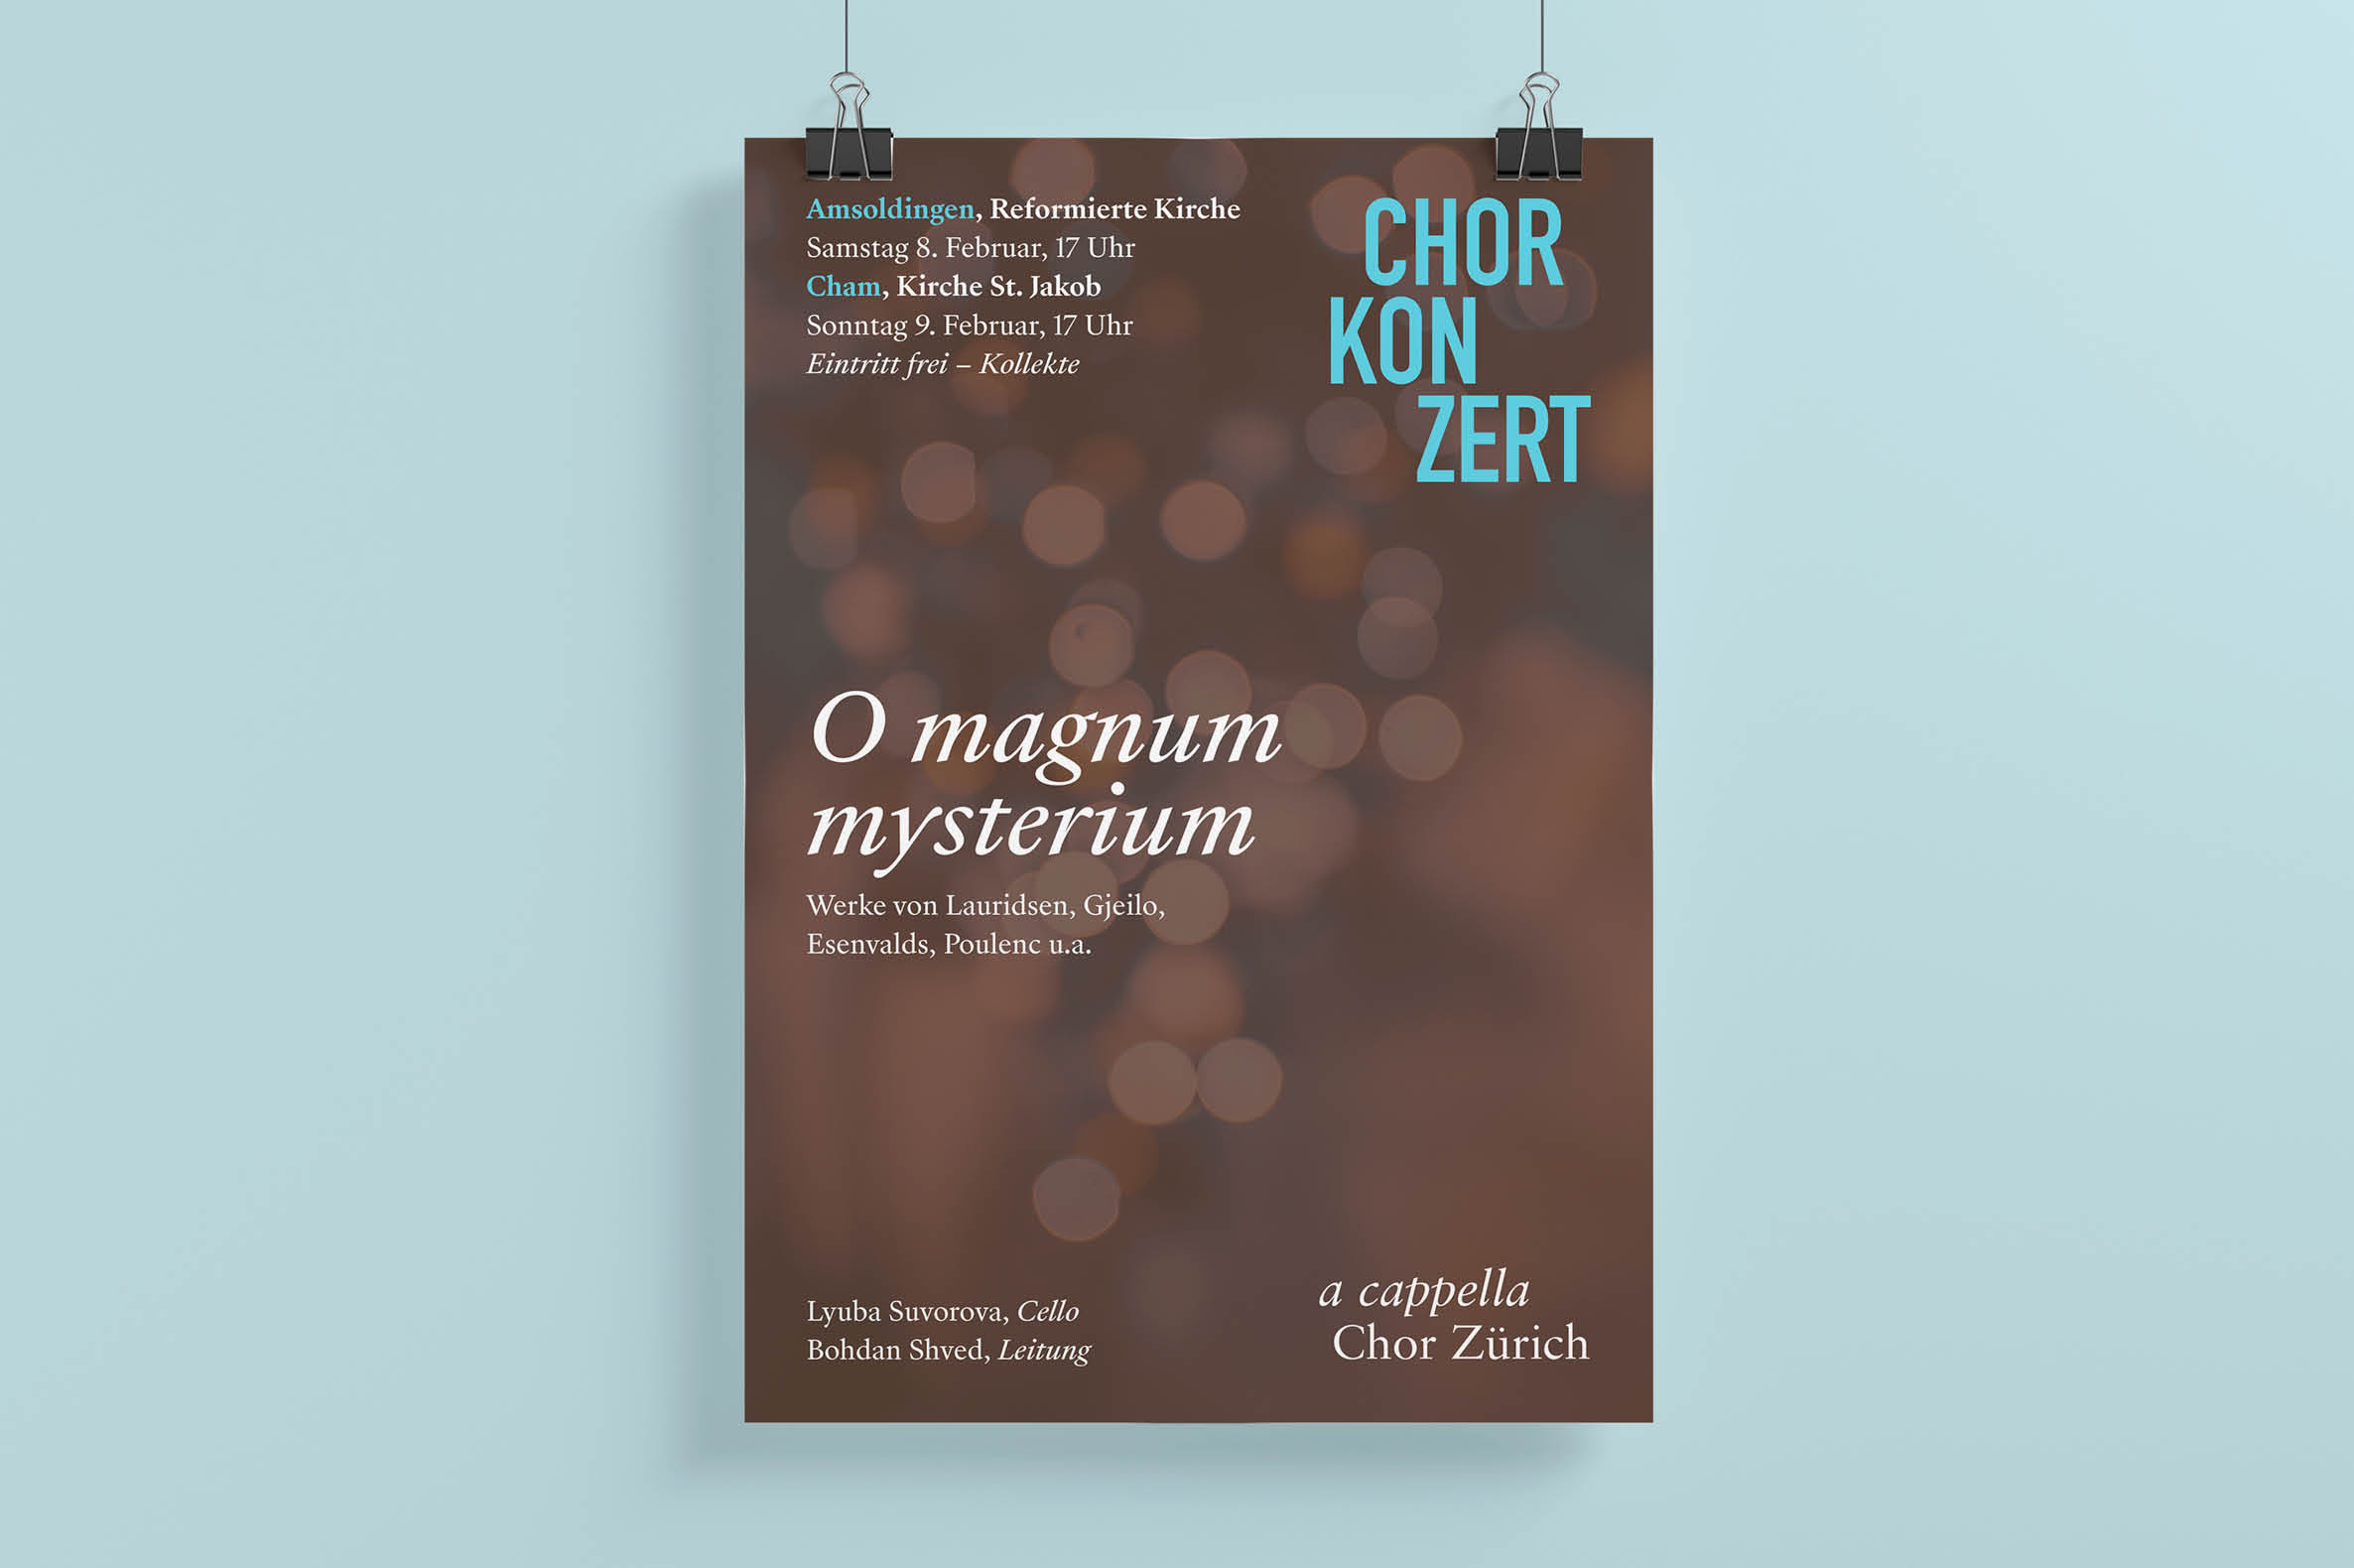 A Cappella Chor Zürich – Plakat